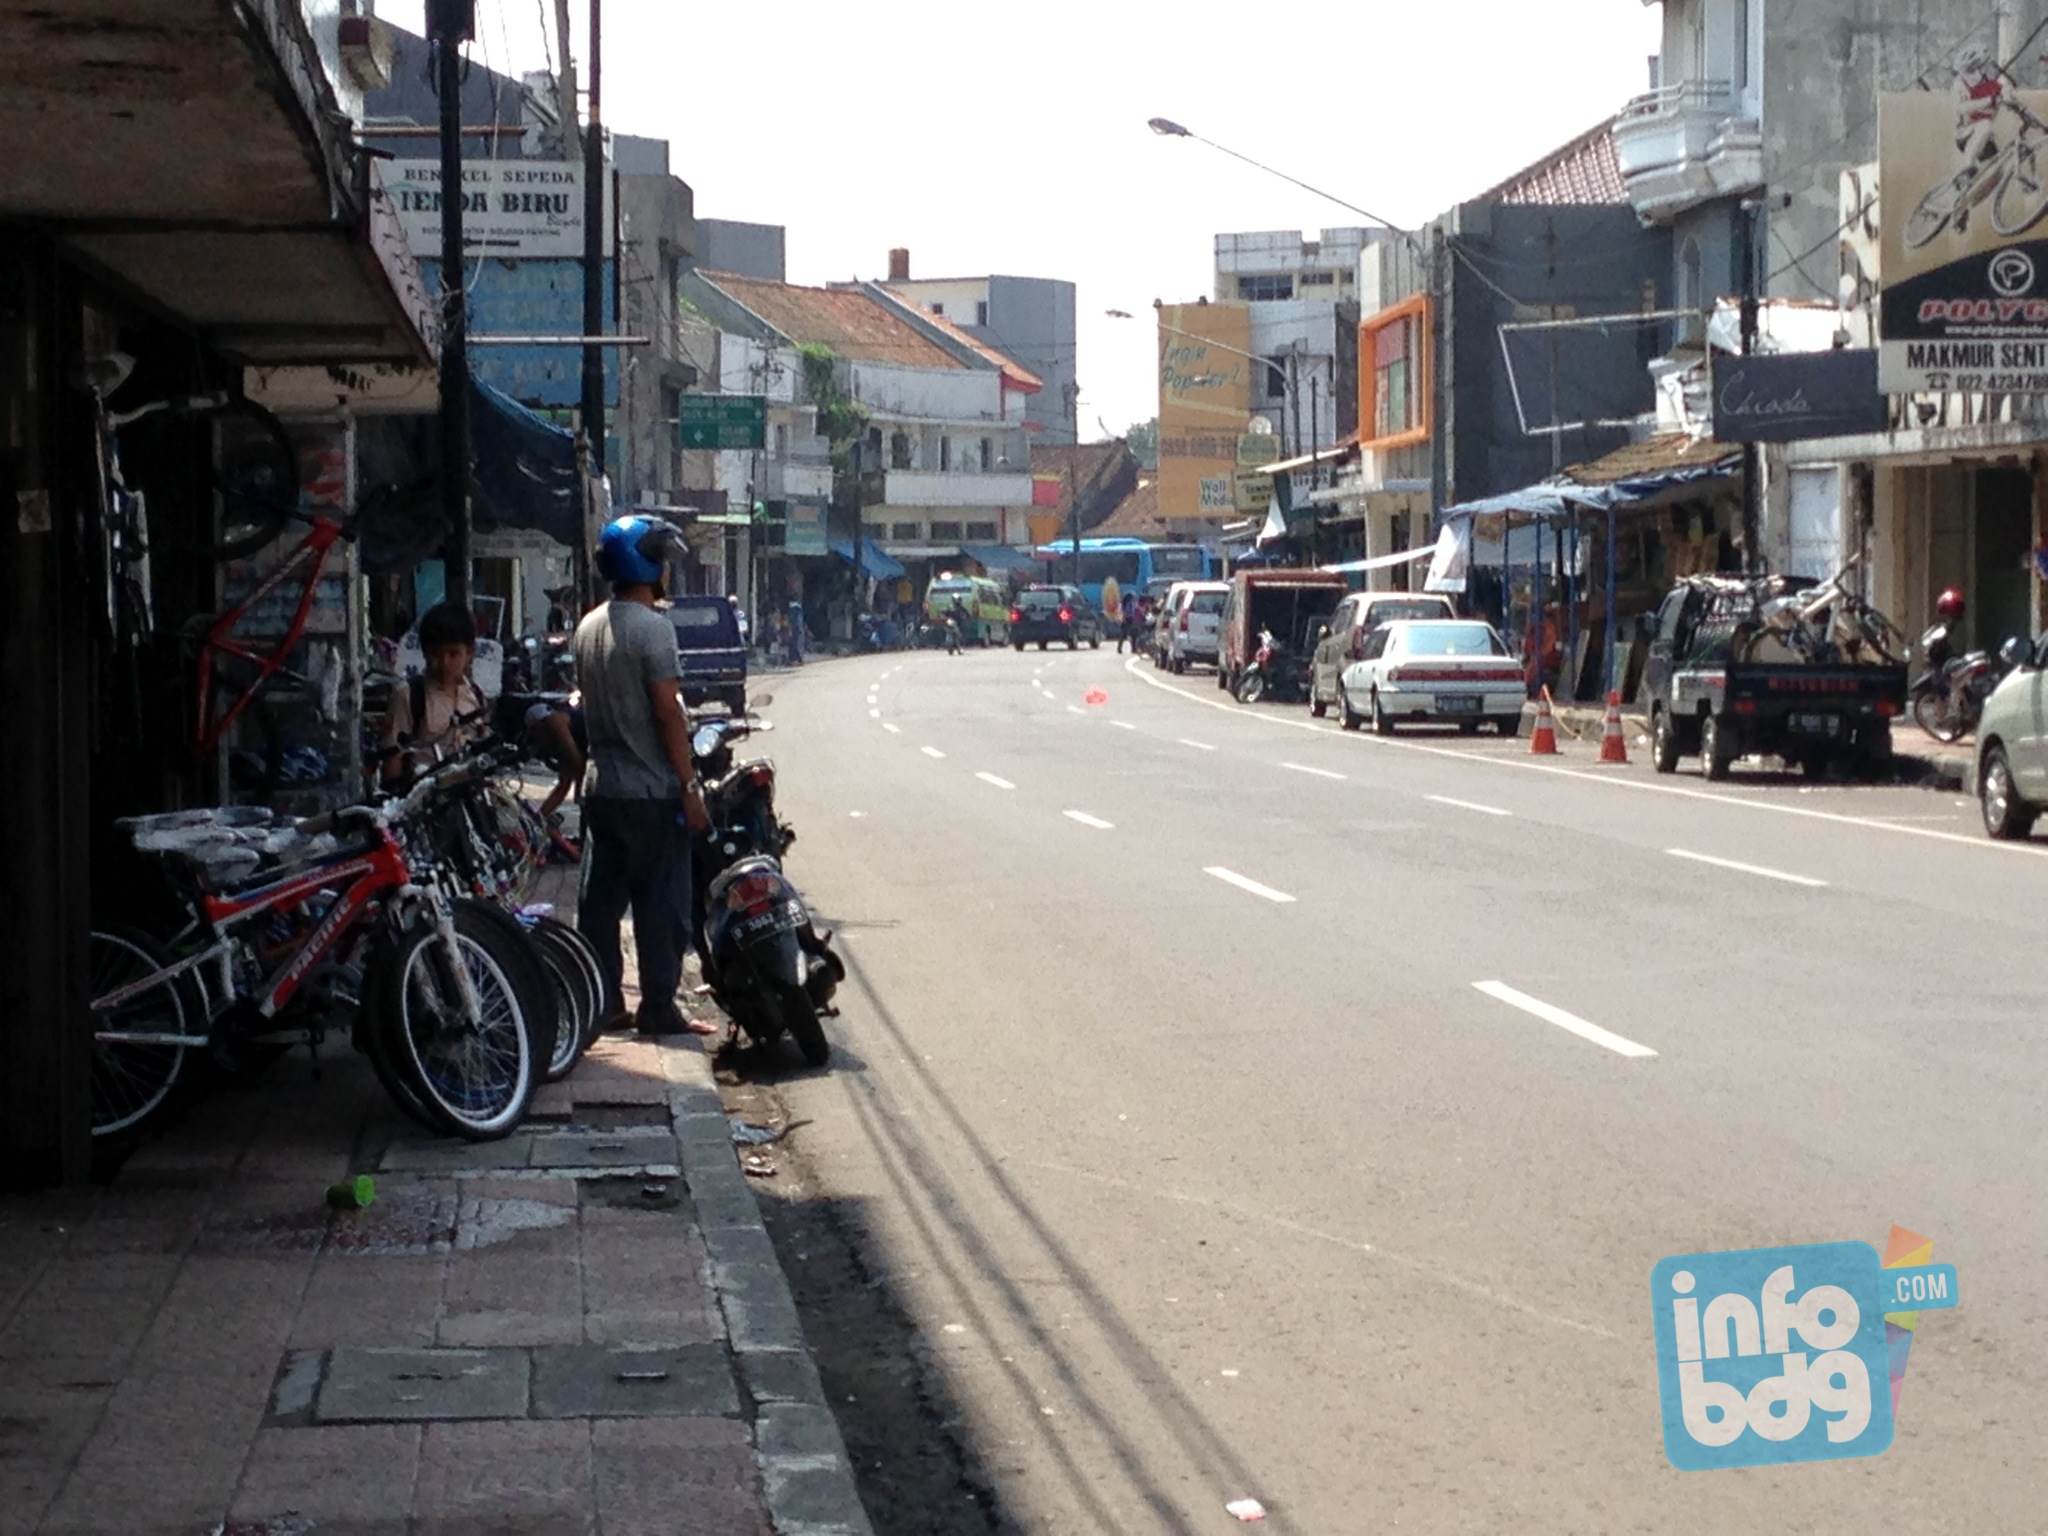 Sentra Sepeda Dan Bengkel Sepeda Di Kota Bandung Infobdgcom